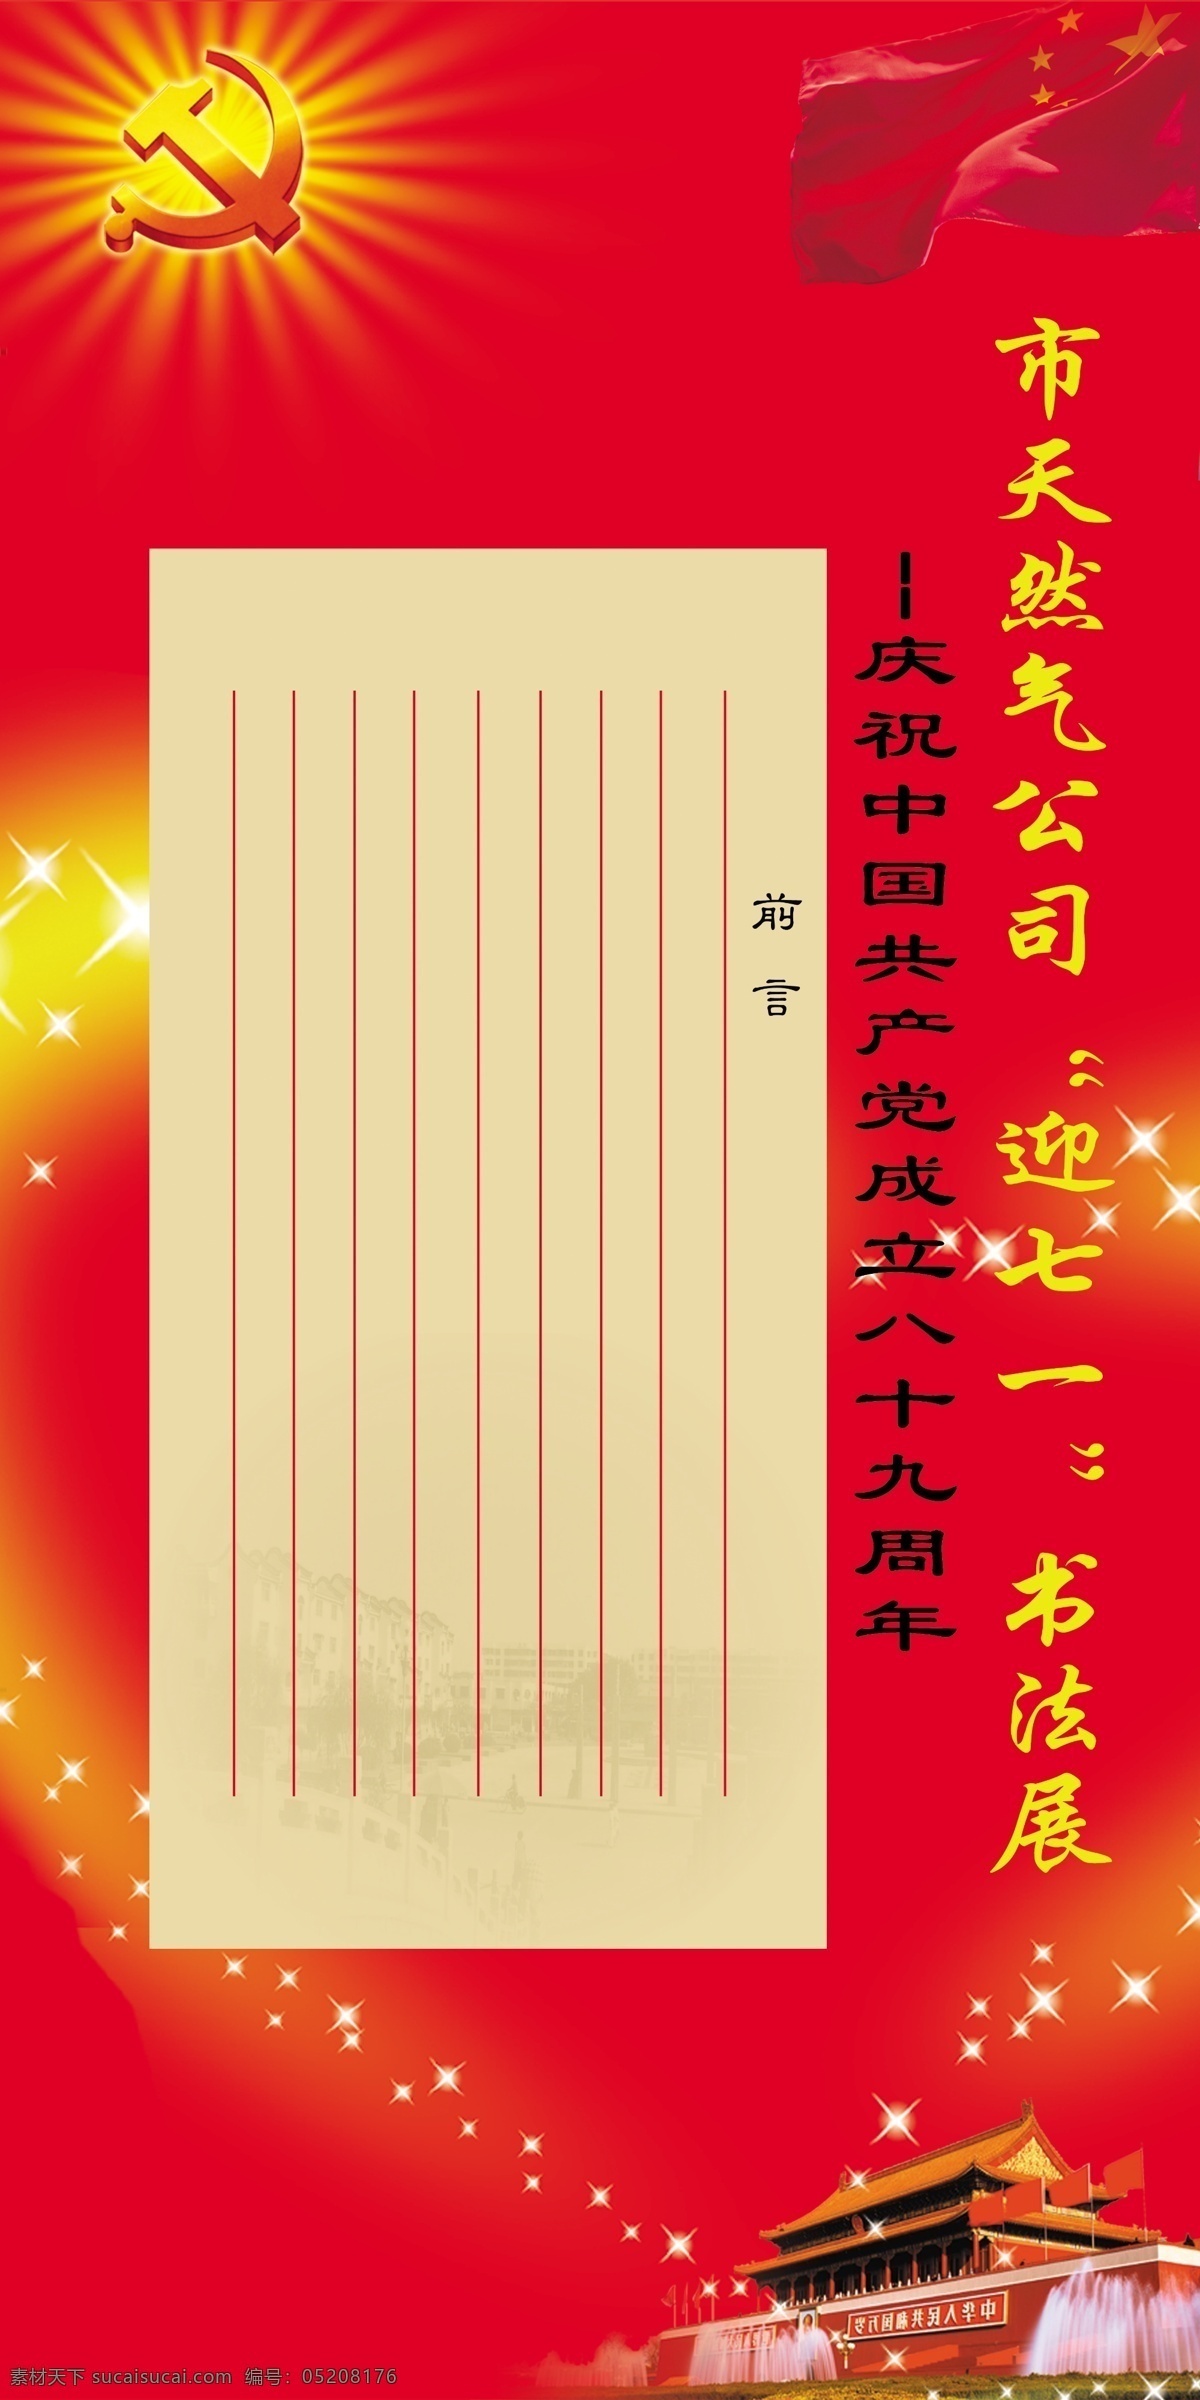 庆七一书法展 发光党徽 庆七一 书法展 庆祝 中国共产党 成立 周年 模板 展板模板 广告设计模板 源文件